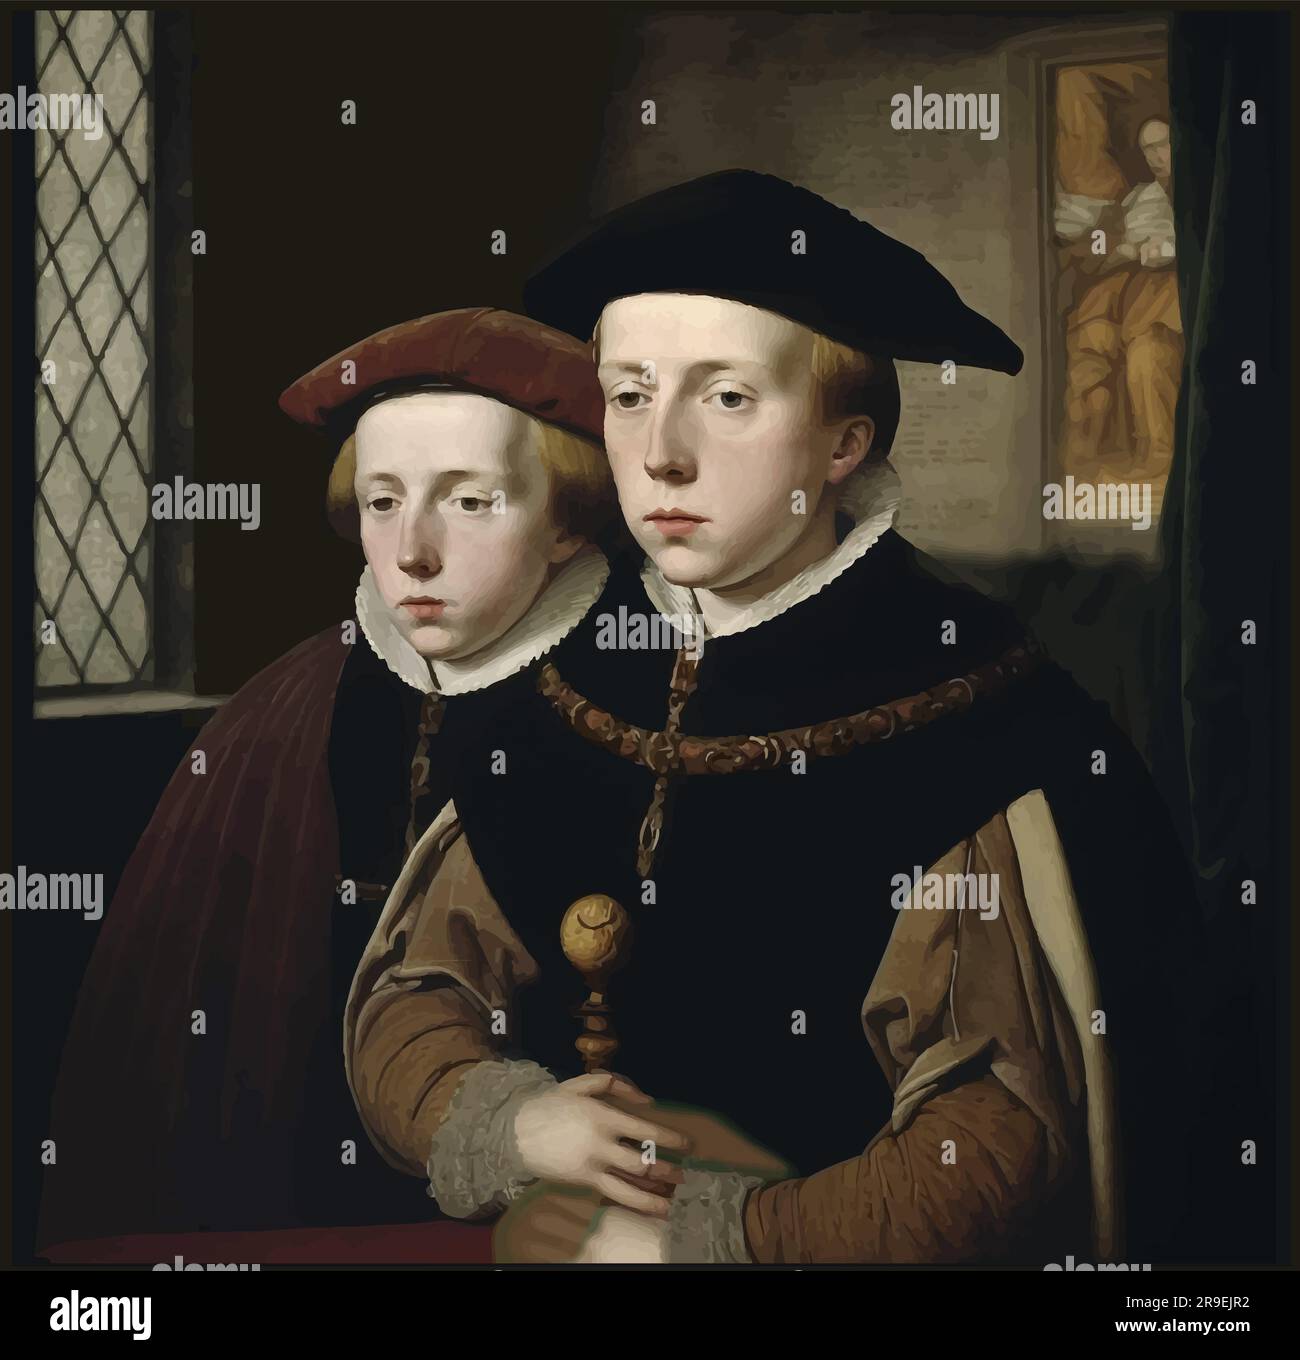 Vektorporträt von Edward V. und seinem jüngeren Bruder Richard of Shrewsbury, Herzog von York (d. h. 1483). Man nannte sie die Prinzen im Turm. Stock Vektor